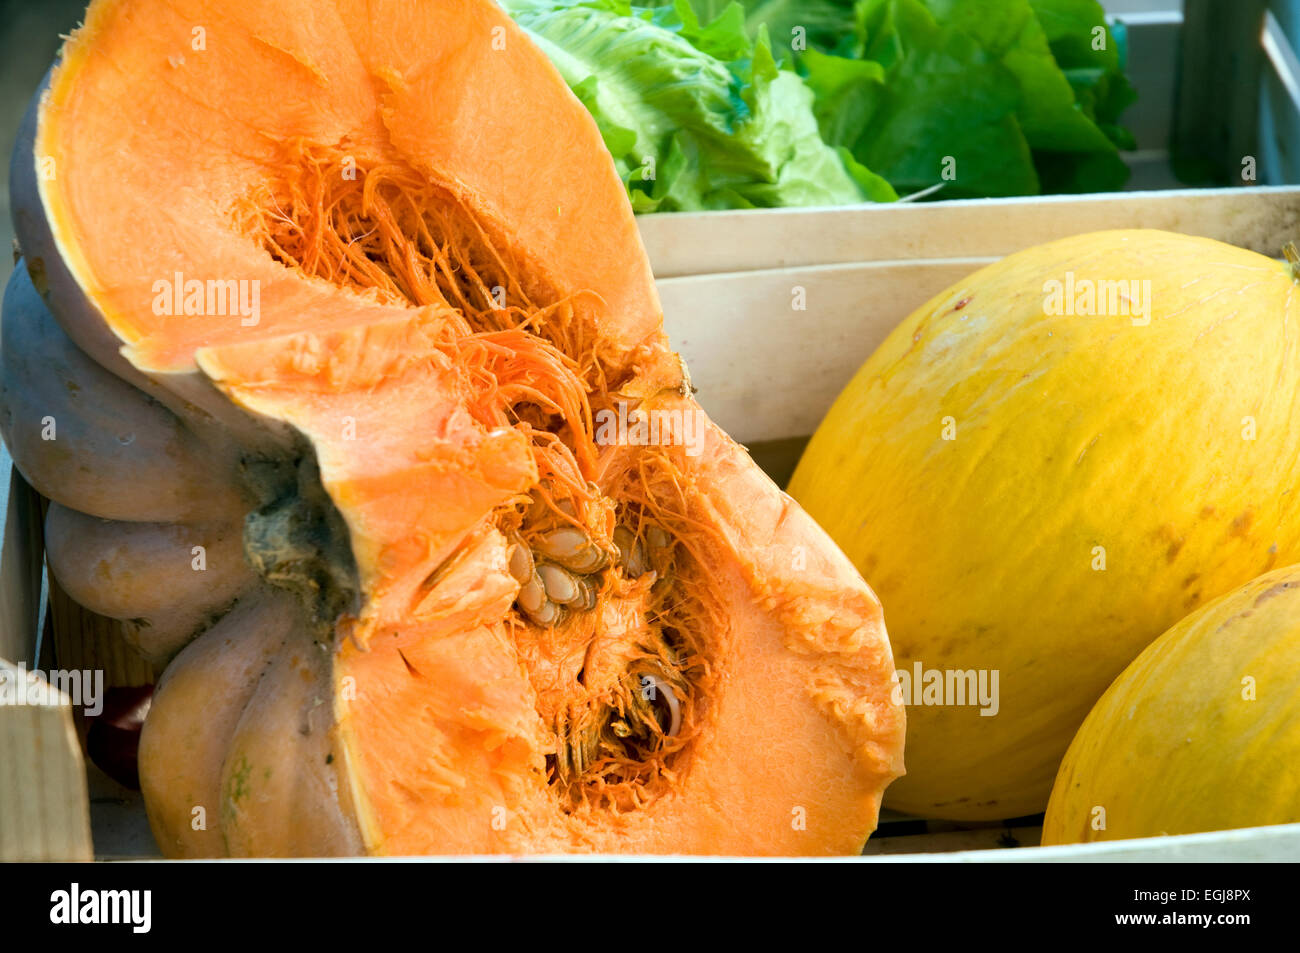 Melone melon potiron zucca pollica acciaroli Cilento Italie du sud l'alimentation Banque D'Images